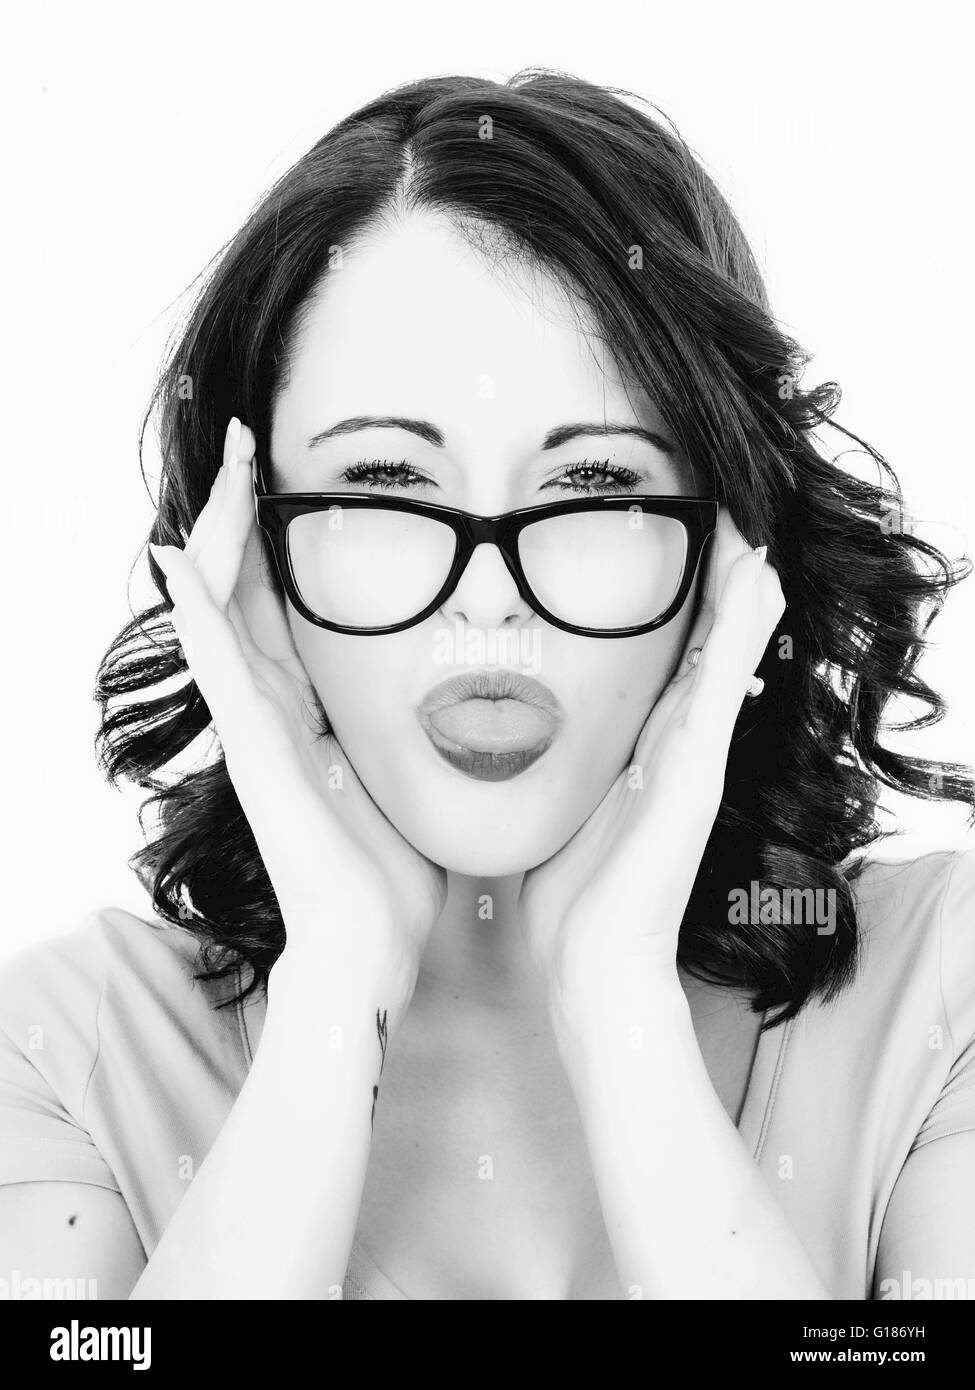 Ritratto di una donna con la lingua fuori in un giocoso gesto umoristico contro uno sfondo bianco Foto Stock